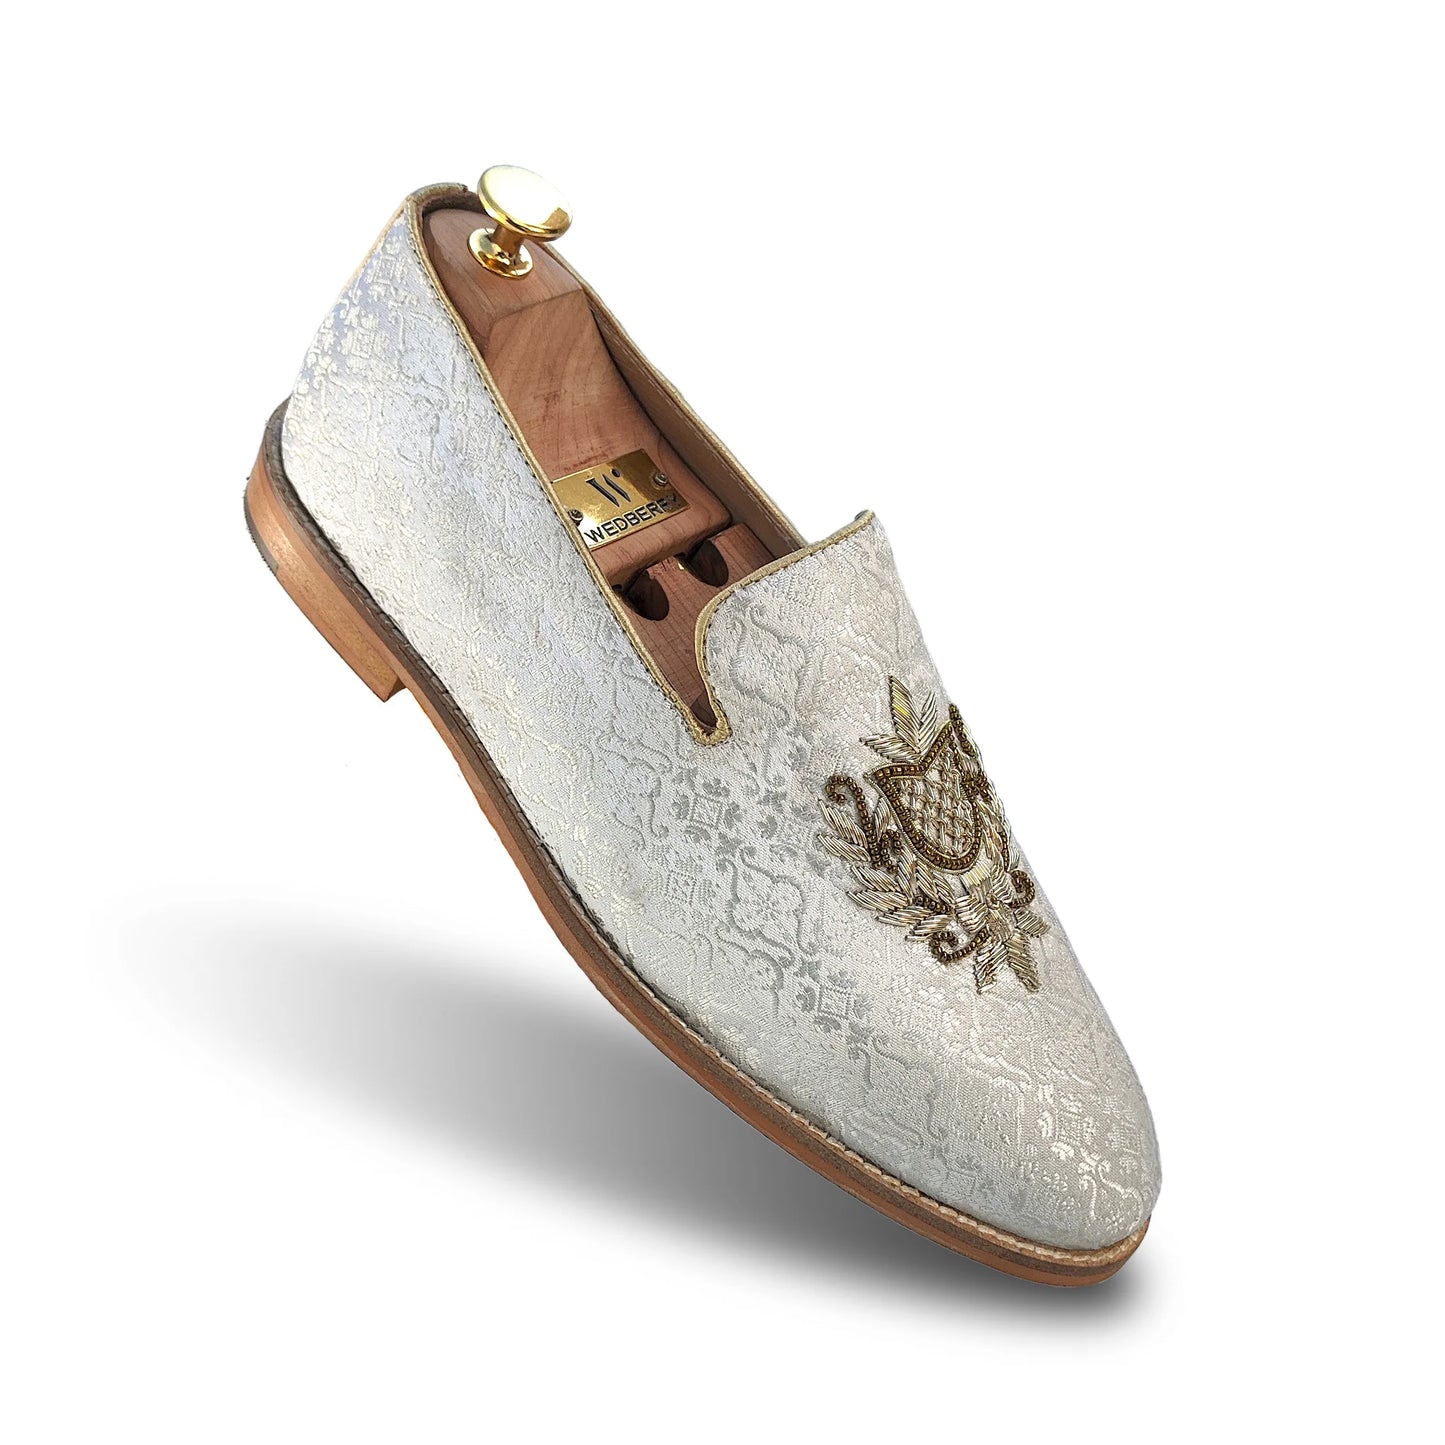 White Brocket Light Gold Zardozi Handwork Wedding Shoes Ethnic Loafers for Men